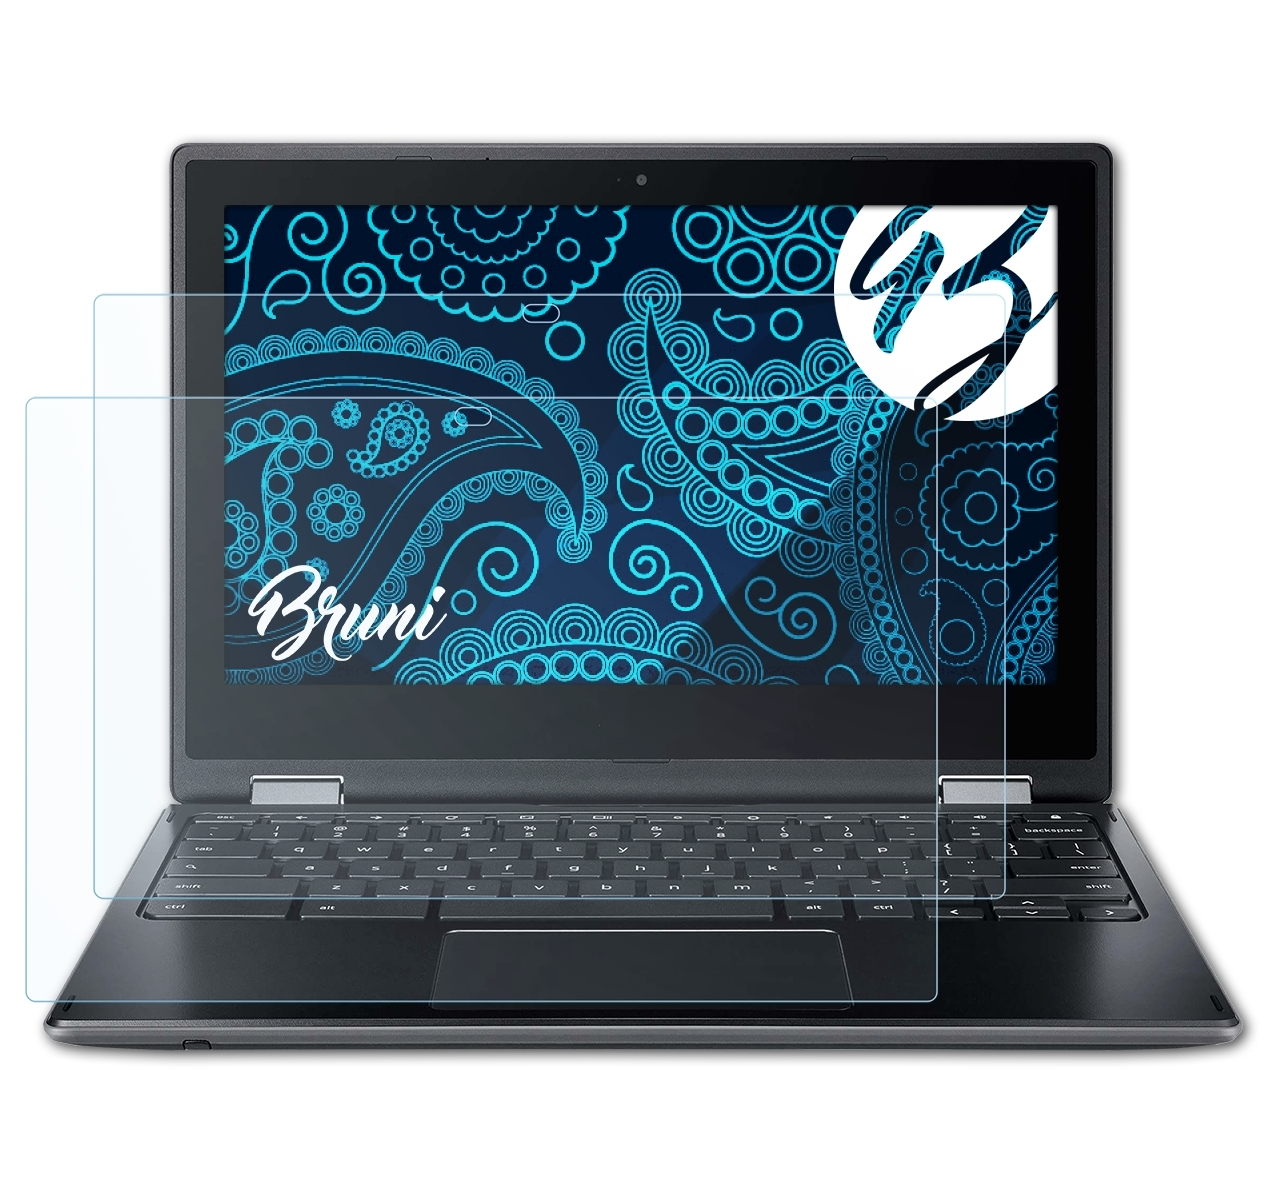 Chromebook BRUNI Spin Basics-Clear Acer Schutzfolie(für 511) 2x